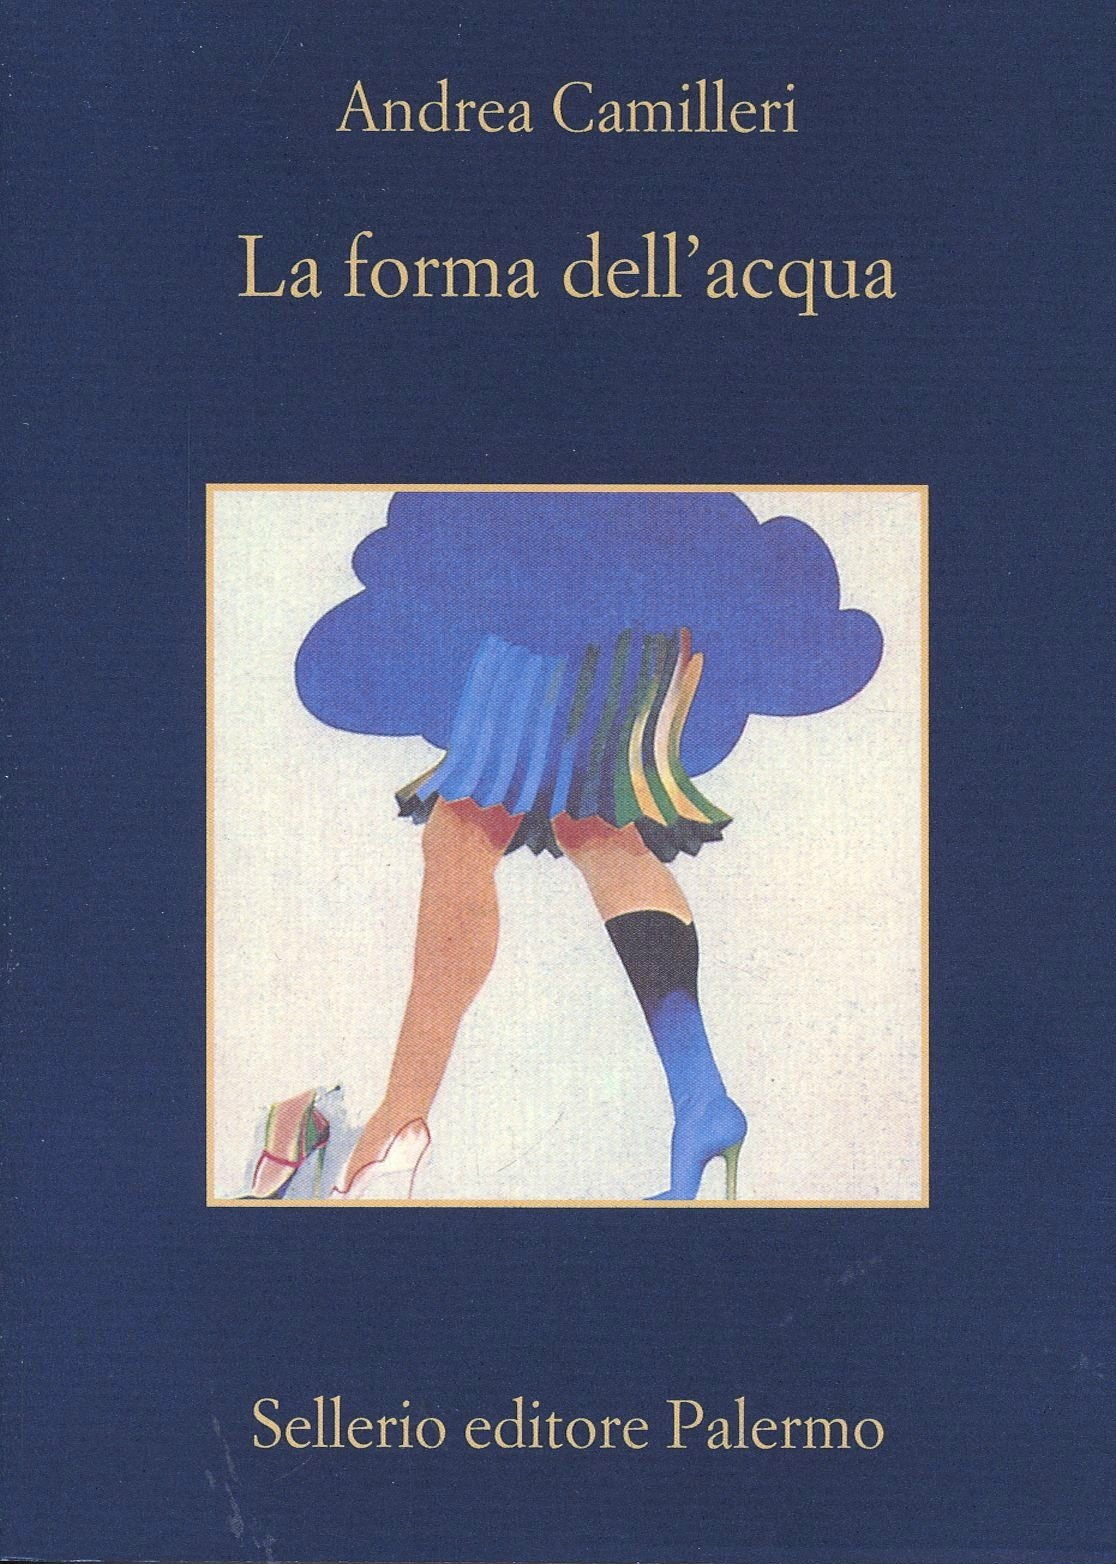 La forma dell'acqua - Andrea Camilleri - Sellerio Editore Palermo